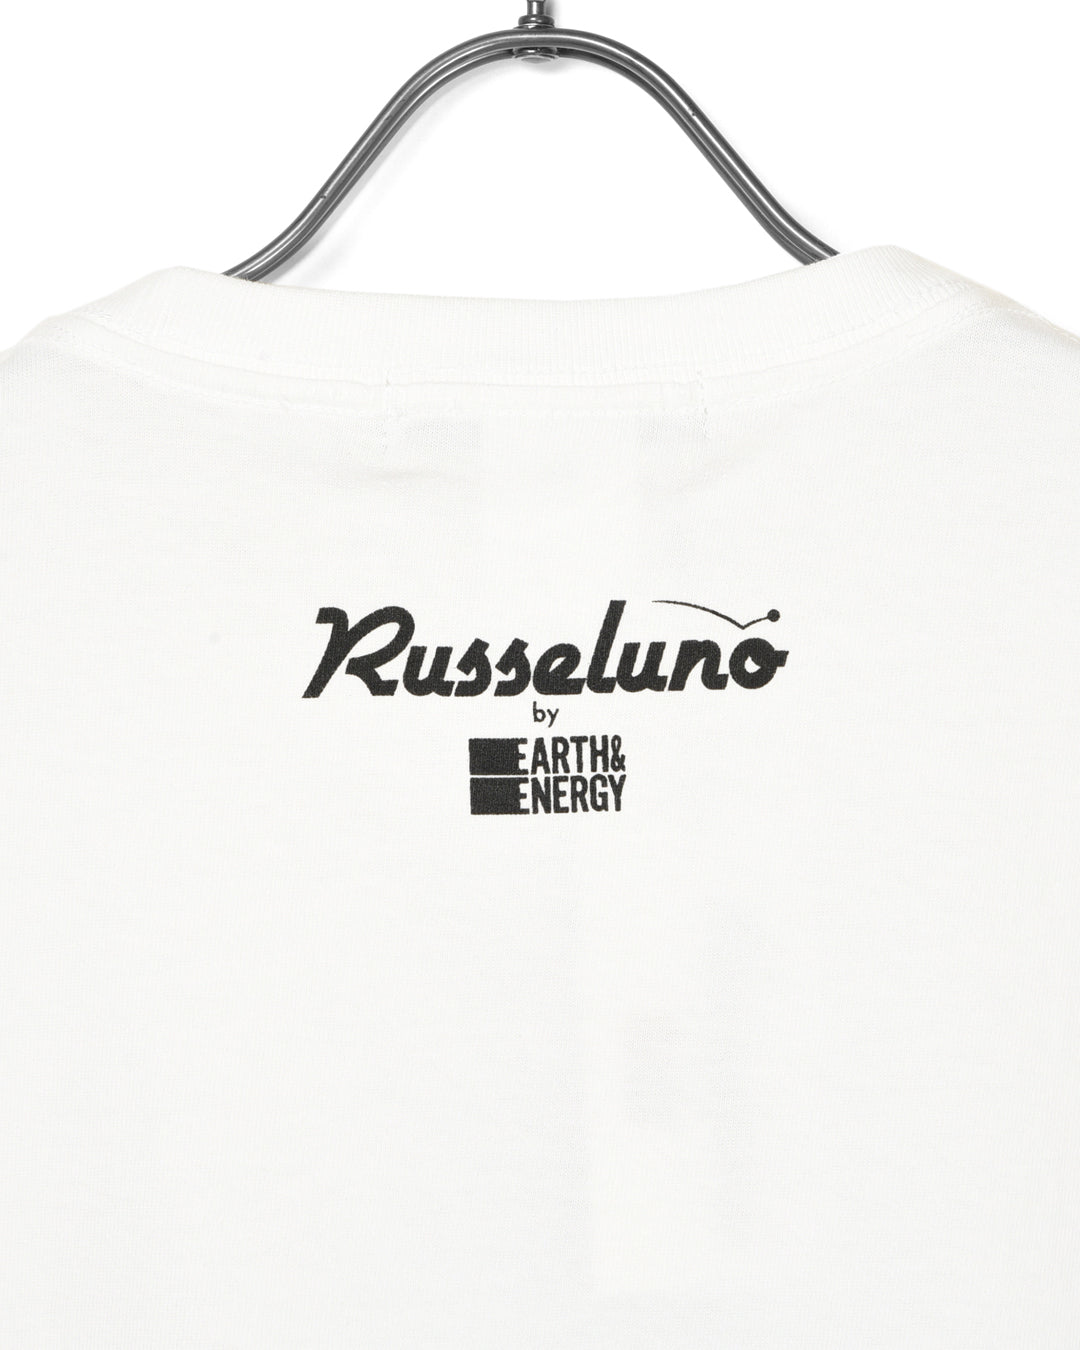 E & E-Ki Nishimoto 티셔츠의 Russeluno